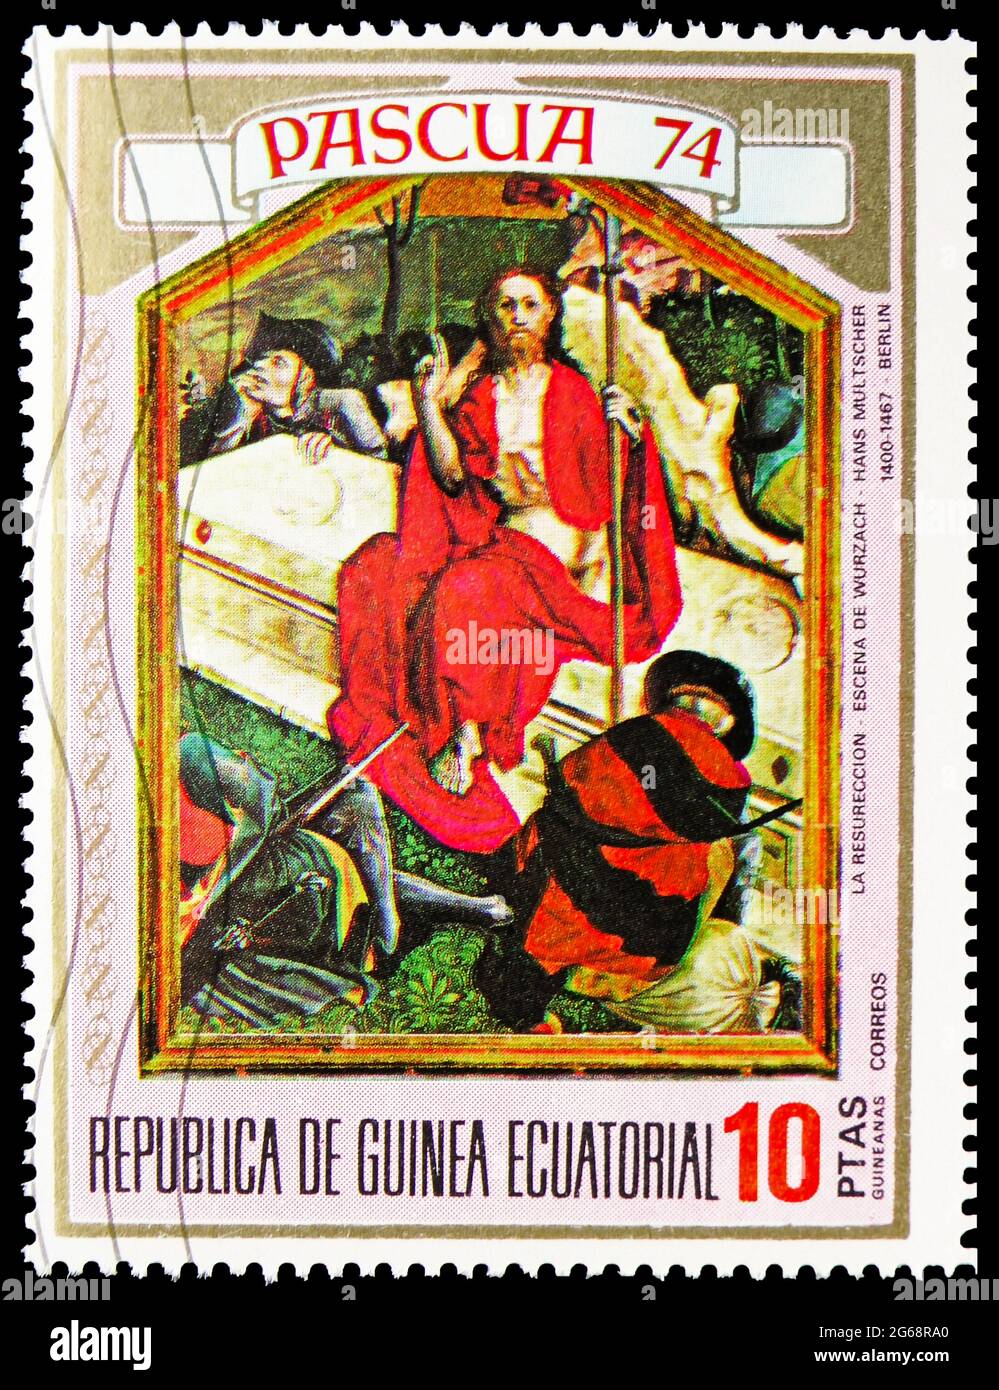 MOSCOU, RUSSIE - 16 DÉCEMBRE 2020: Timbre-poste imprimé en Guinée équatoriale montre Hans Multscher (1400-1467): Résurrection, série de Pâques, 10 Equato Banque D'Images